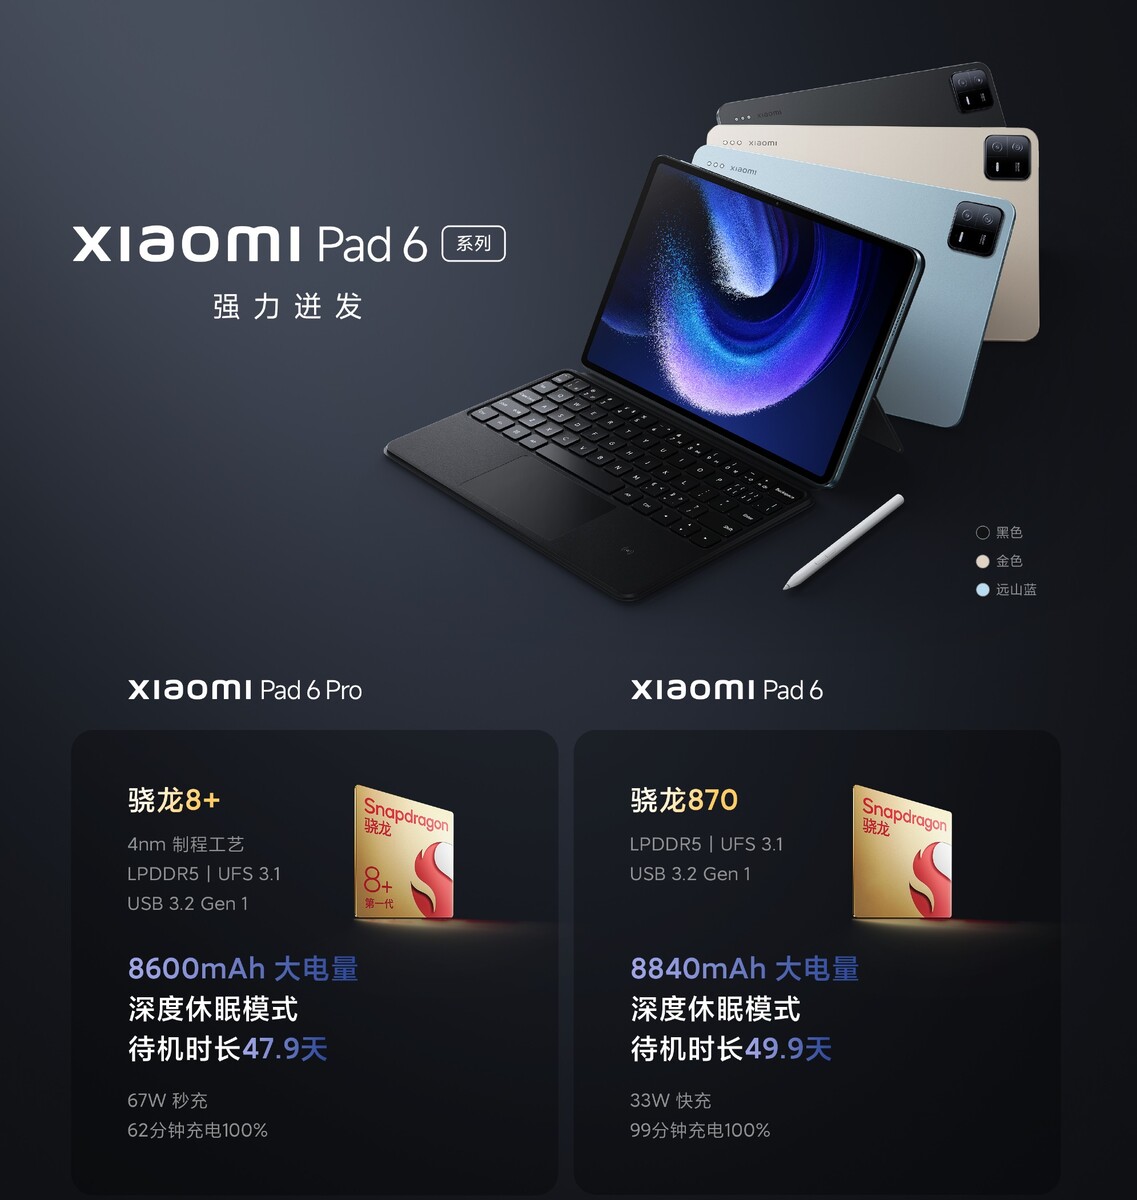 Xiaomi Pad 6 Pro: Price, specs and best deals